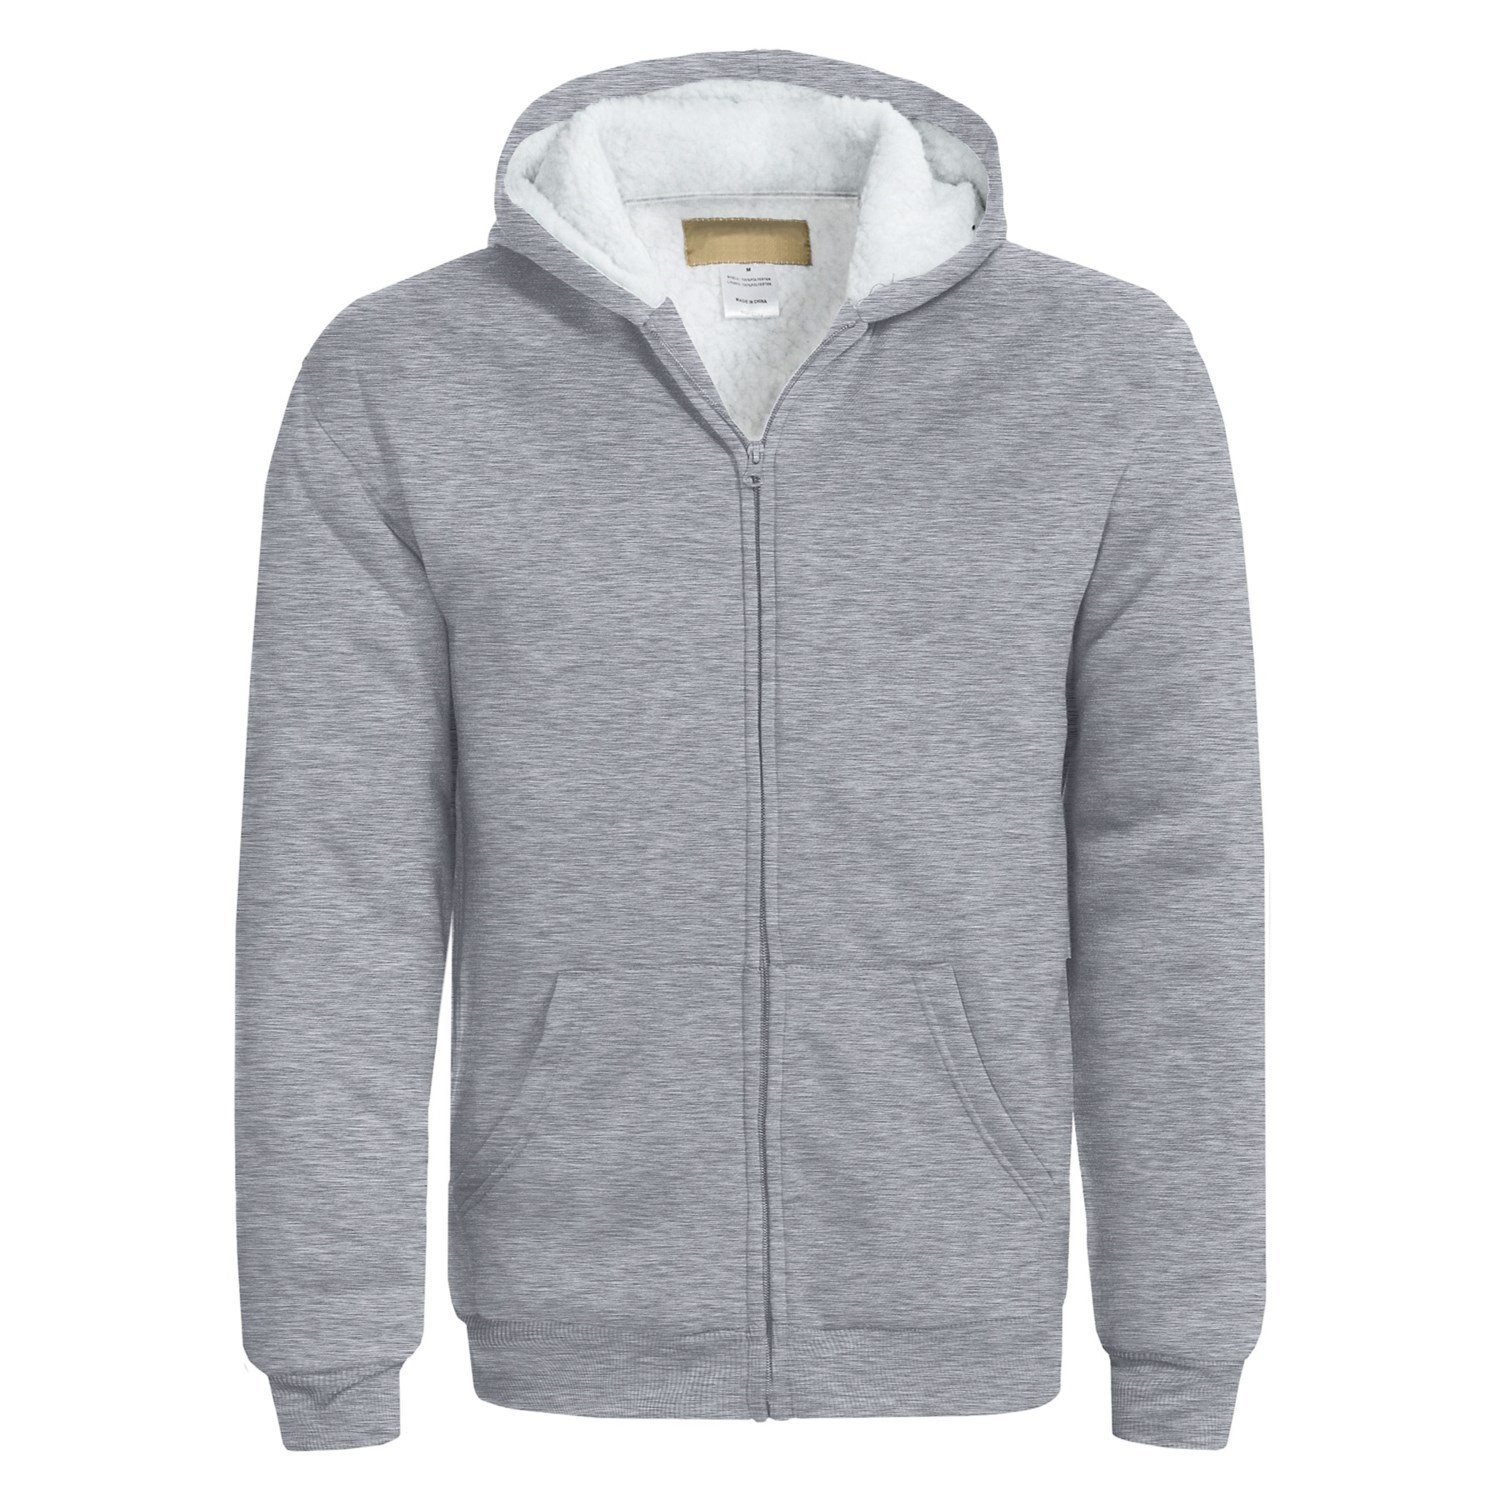 Sherpa-Lined Hoodie Sweatshirt (For Men) - Save 66%